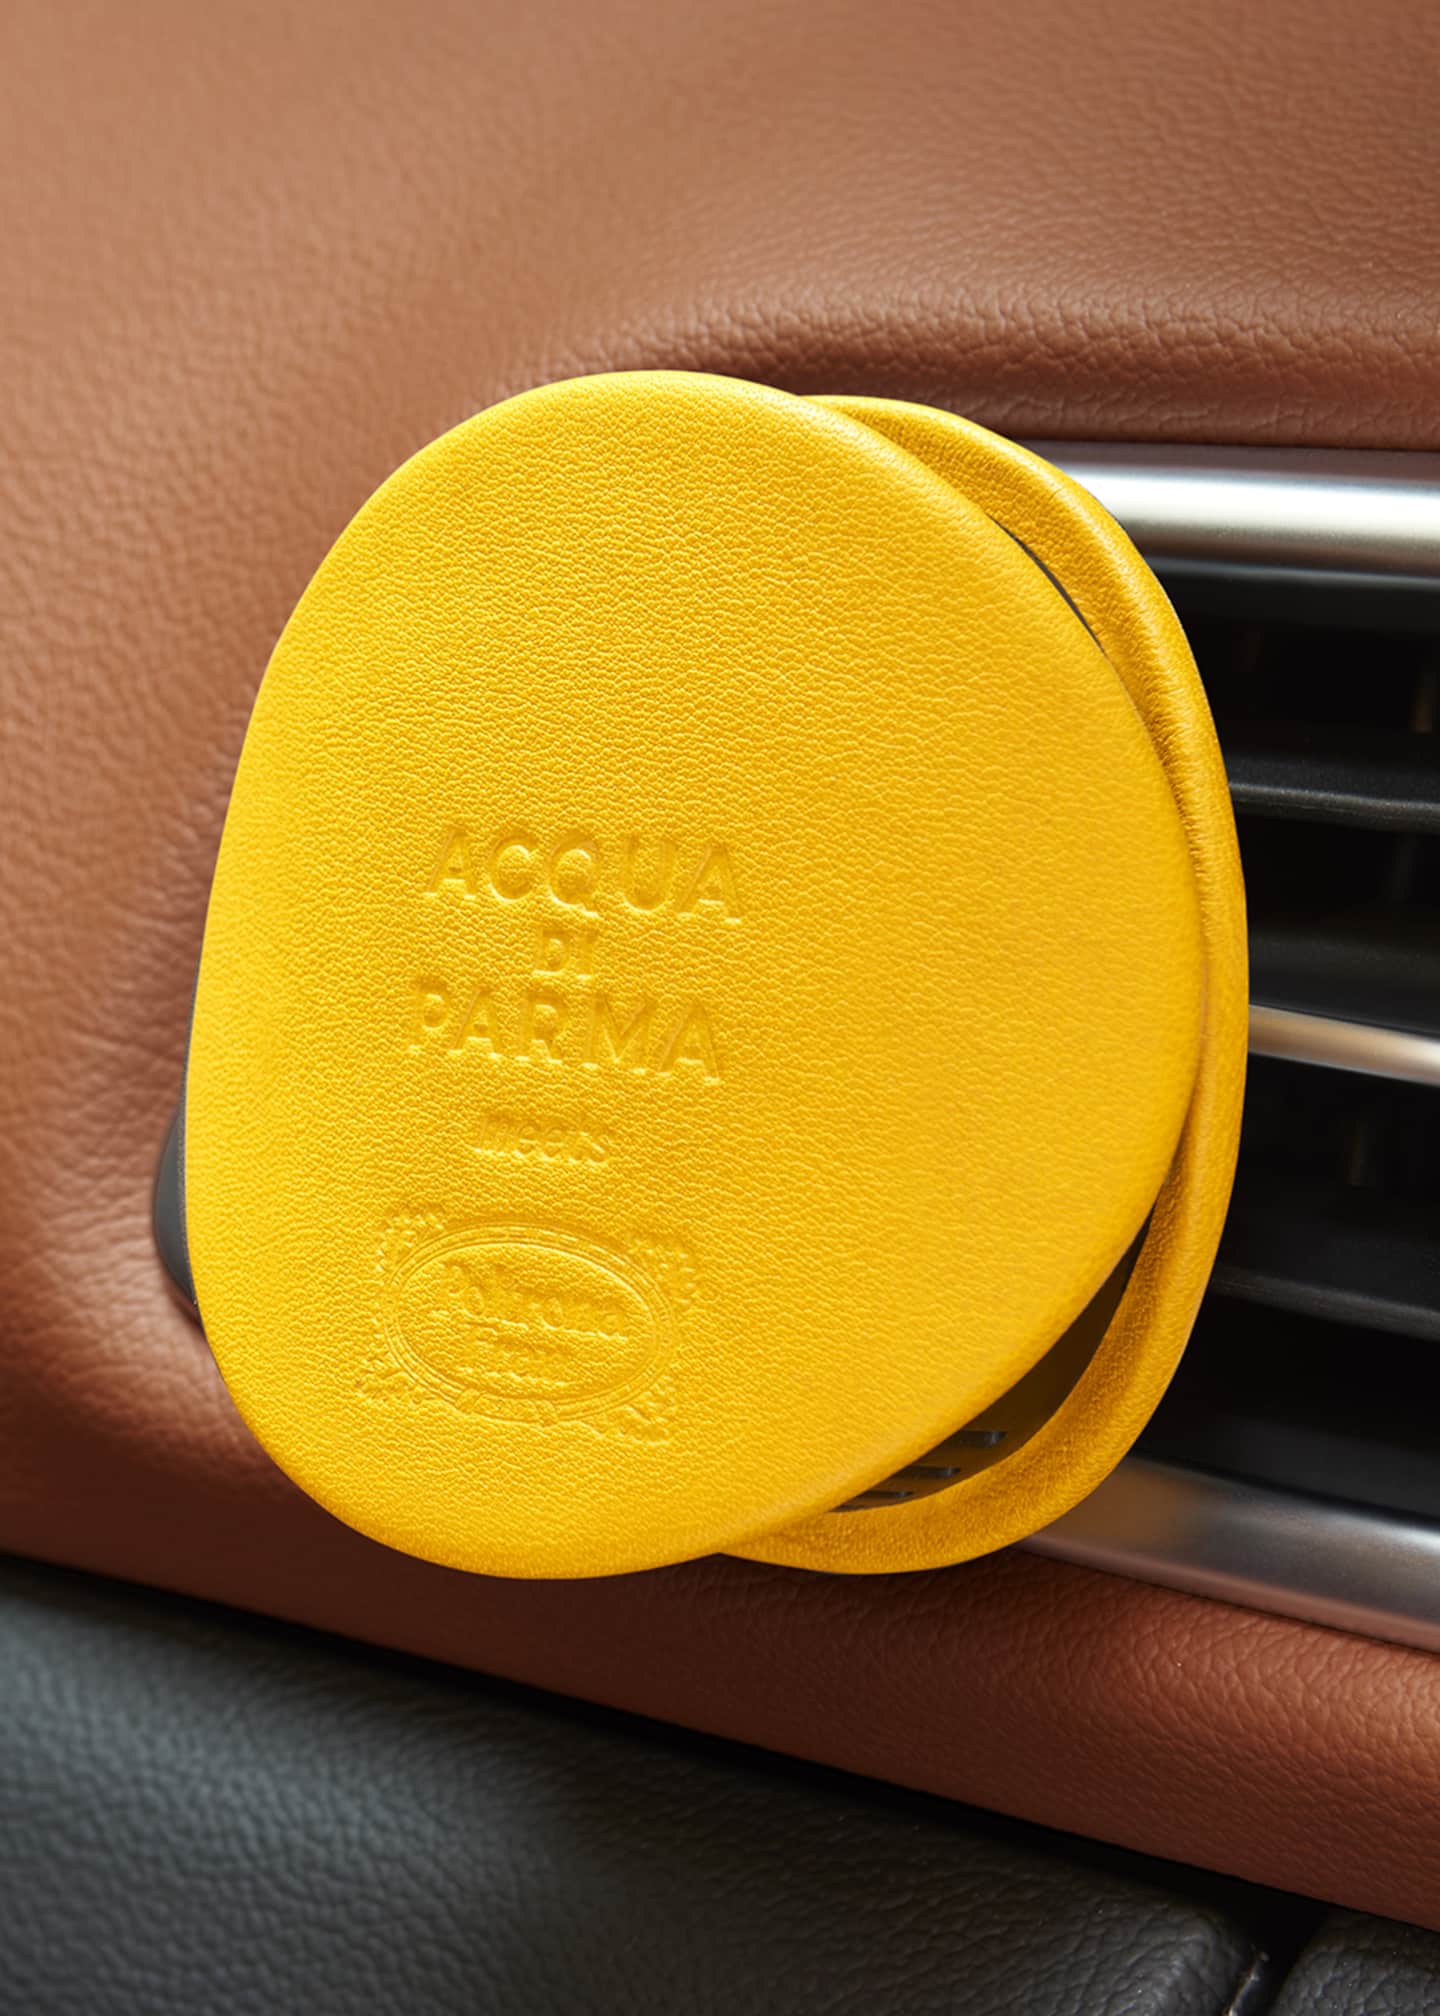 Acqua di Parma Yellow Leather Car Diffuser Case | Bergdorf Goodman